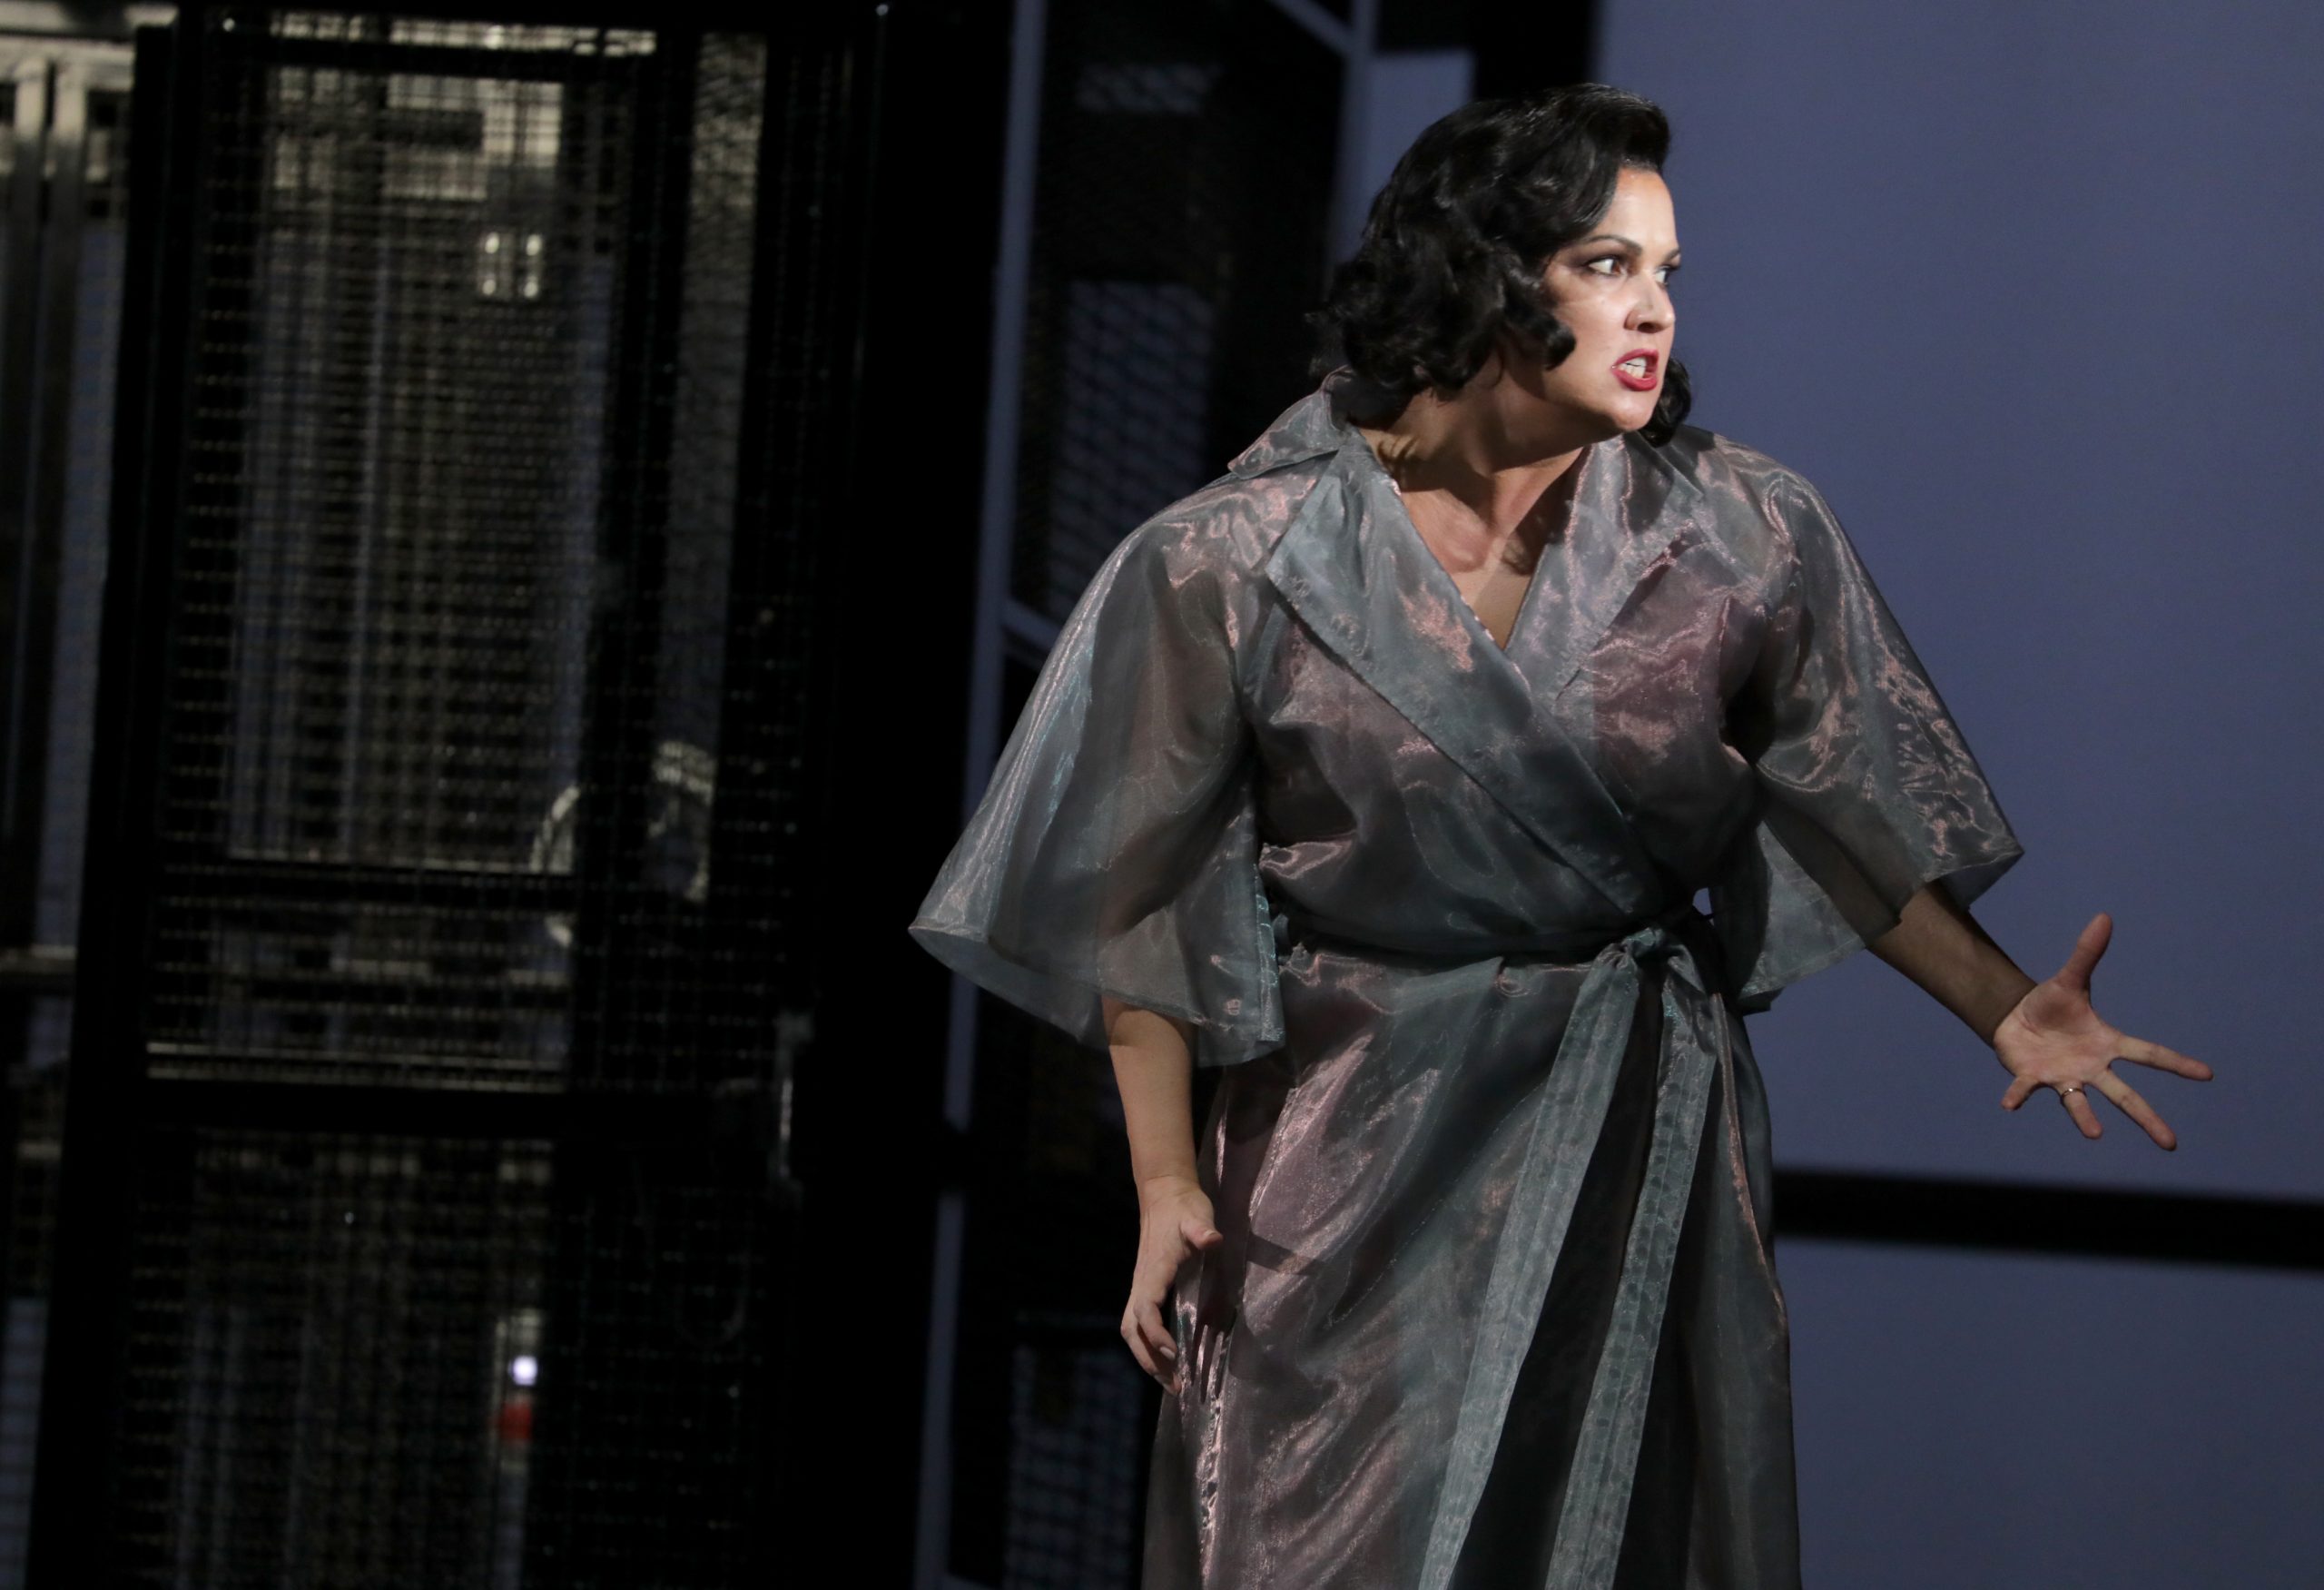 Anna Netrebko en una escena de "Macbeth" en el Teatro alla Scala / Foto: Brescia & Amisano